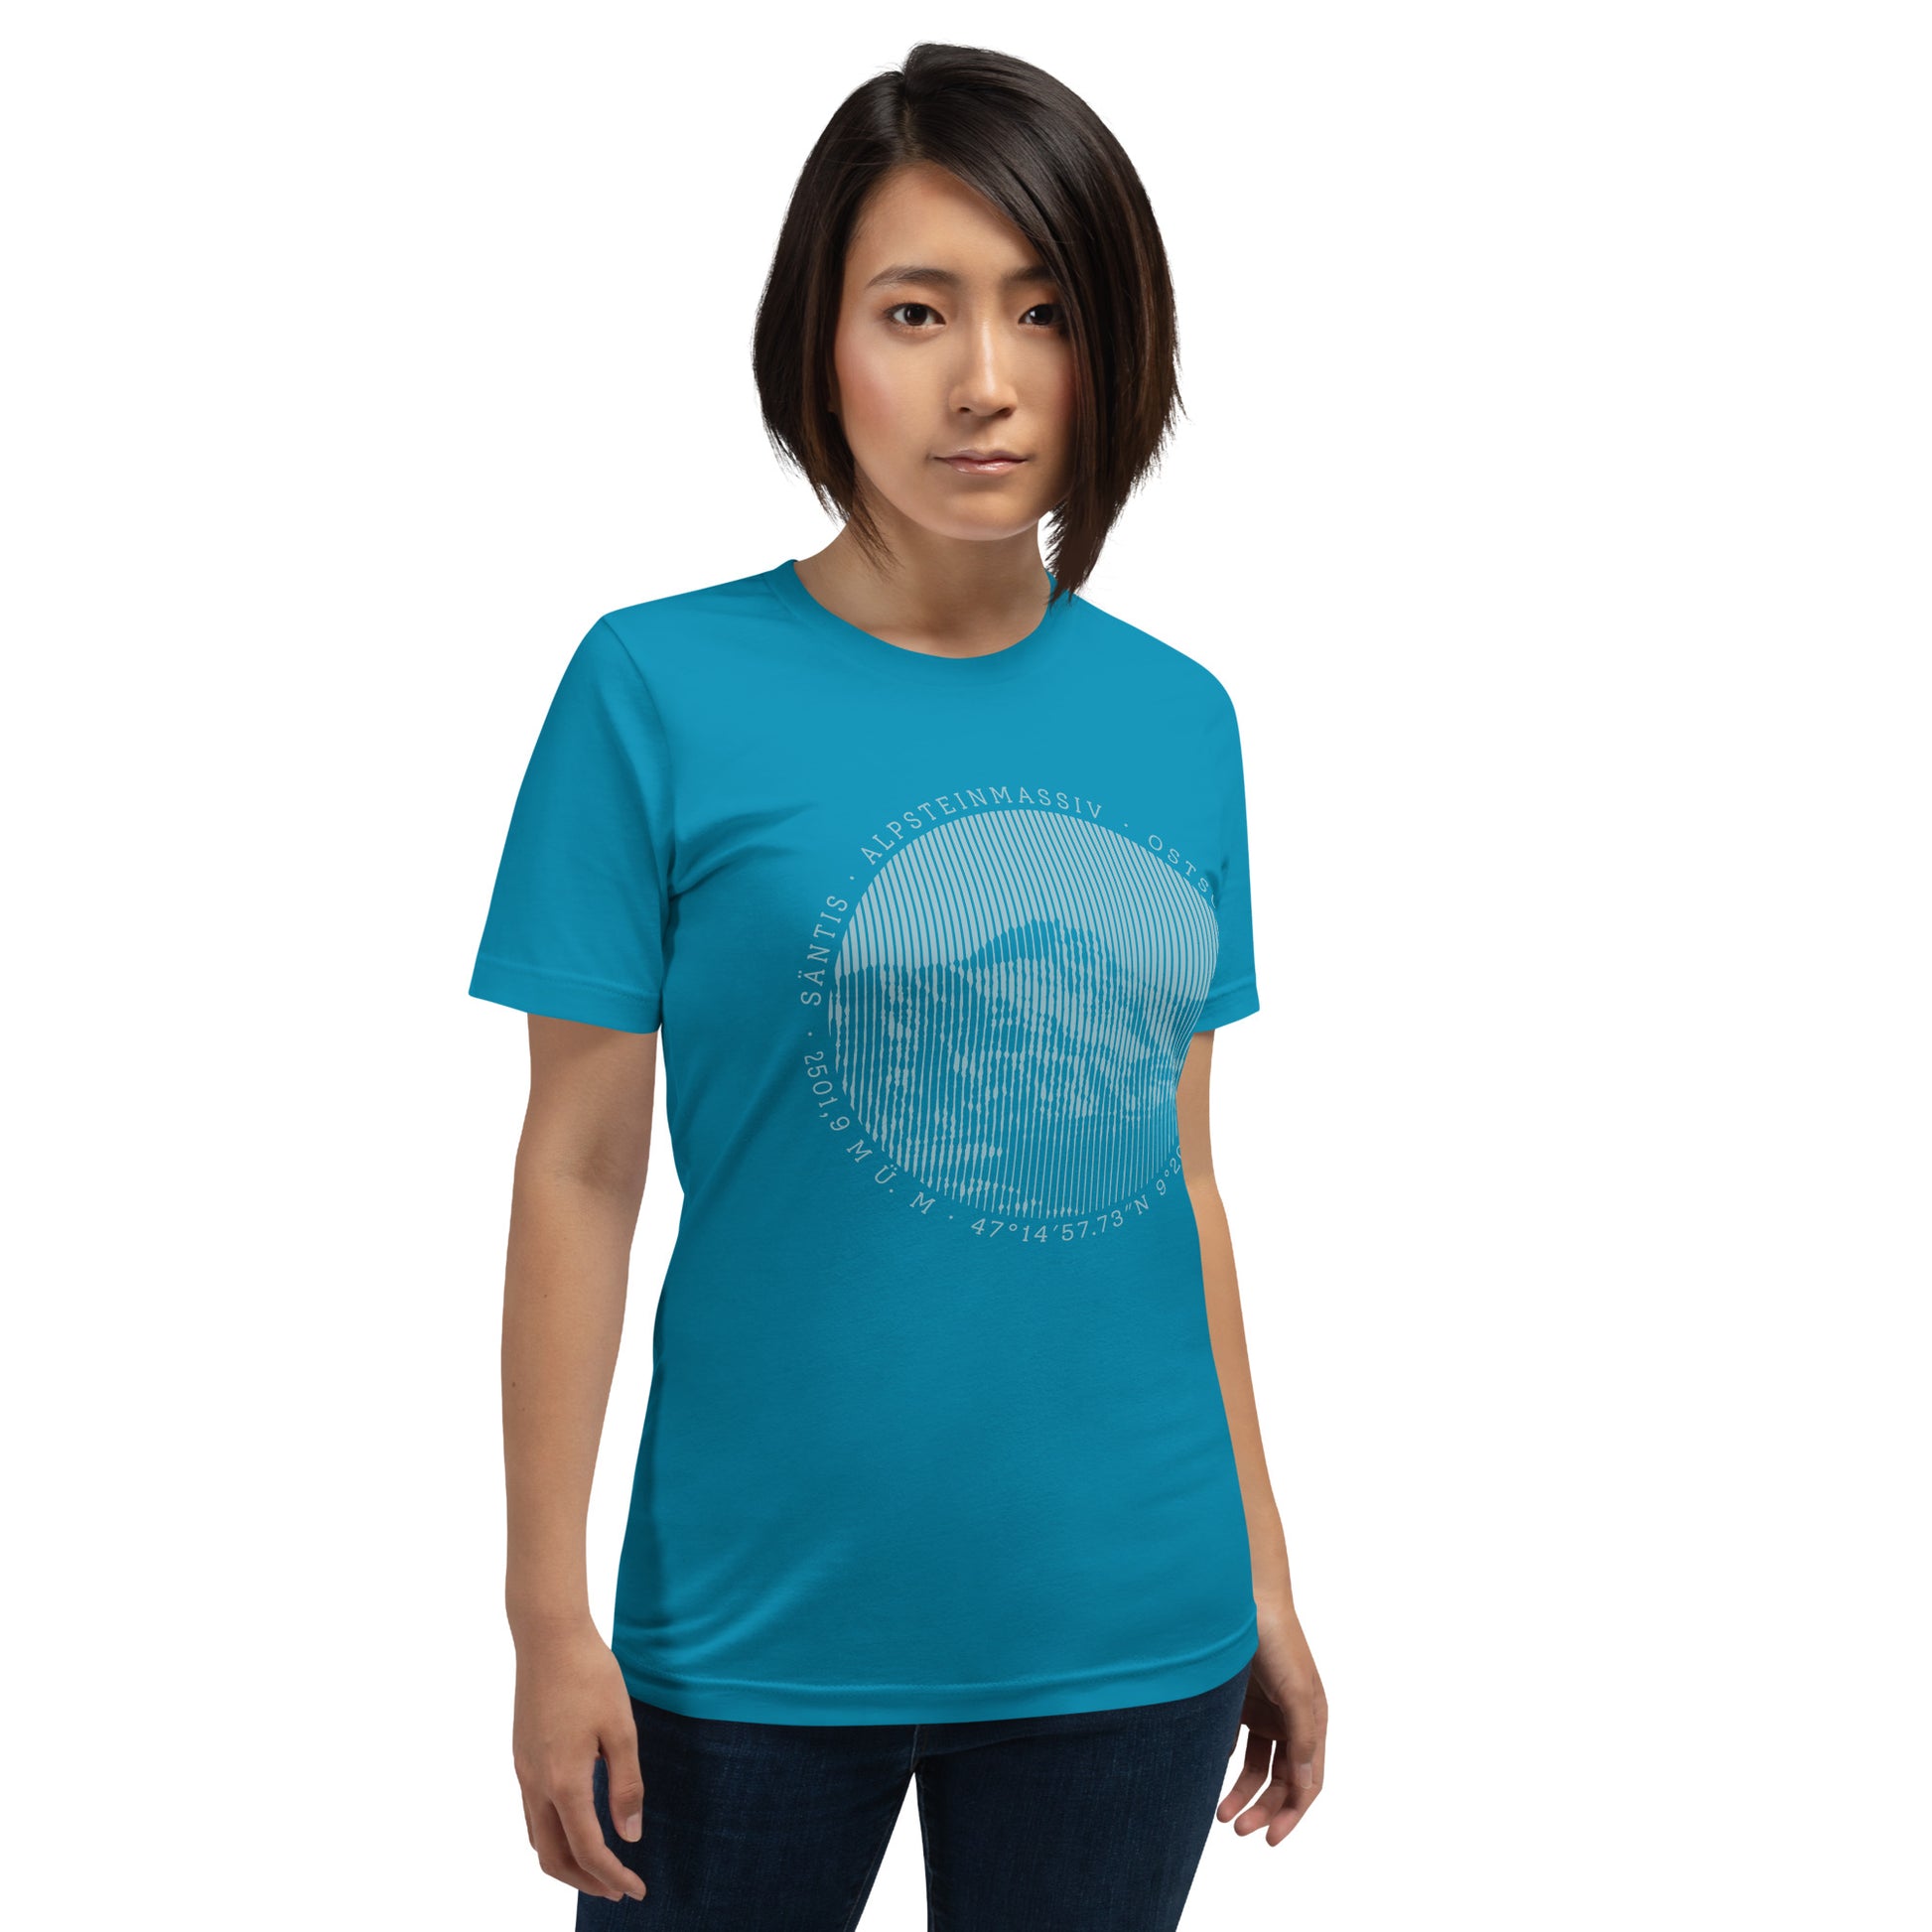 In ihrem türkisfarbenen T-Shirt aus der Säntis-Collection von Vallada zeigt diese Freundin der Berge nicht nur ihren Stil, sondern auch ihre Zuneigung zum Alpsteinmassiv.